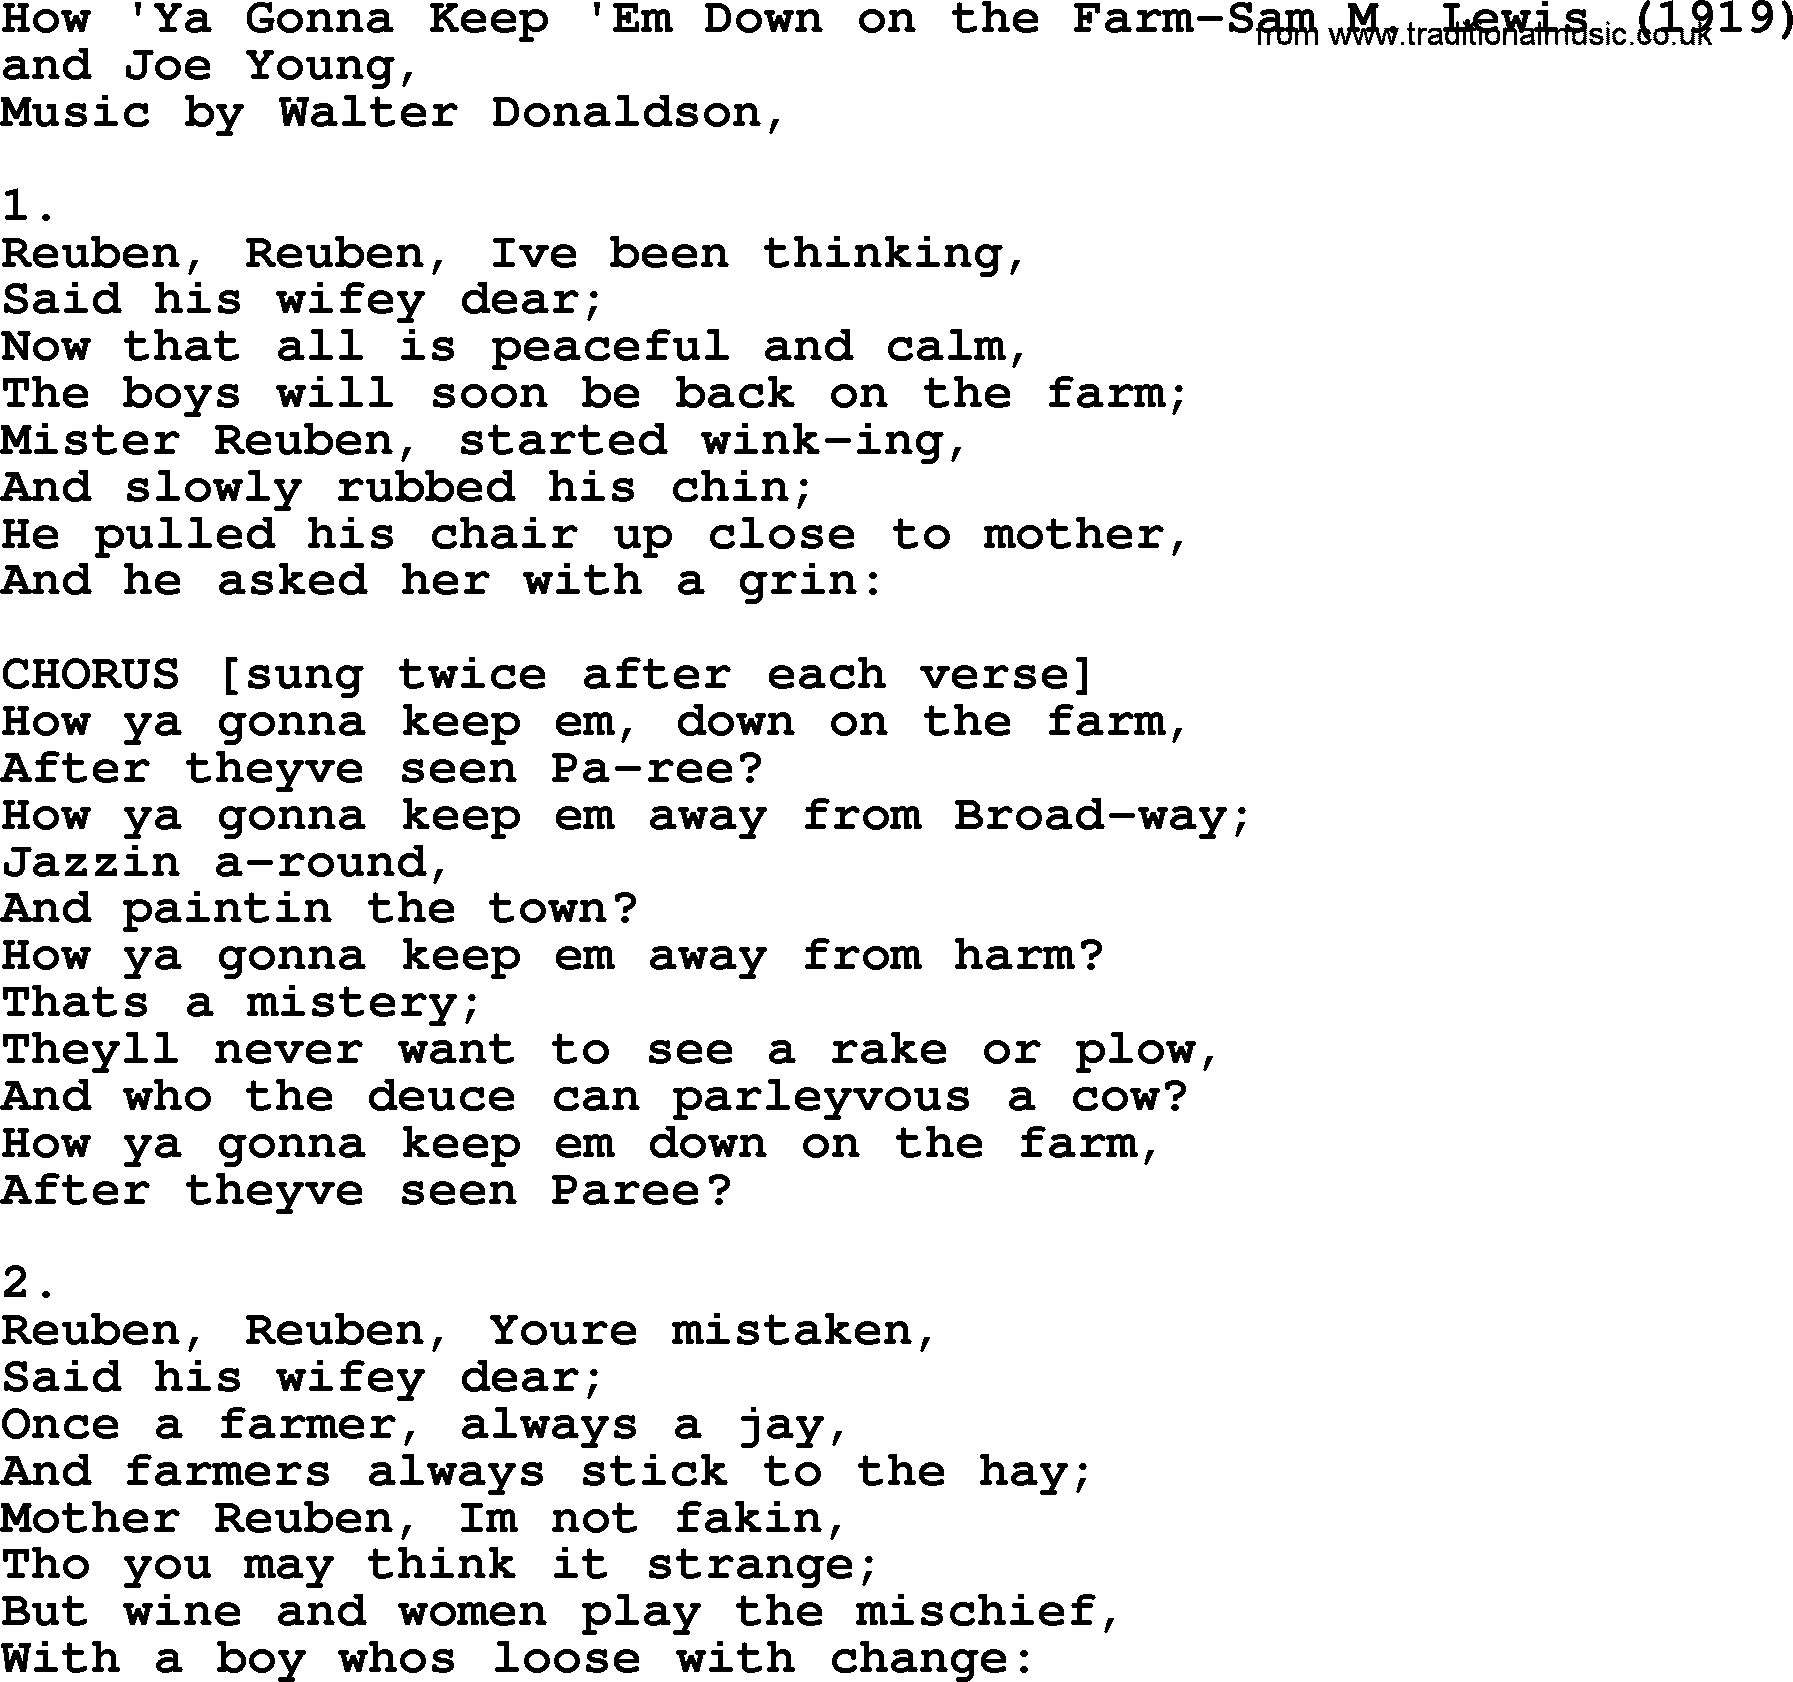 World War(WW1) One Song: How'ya Gonna Keep 'em Down On The Farm-Sam M Lewis 1919, lyrics and PDF